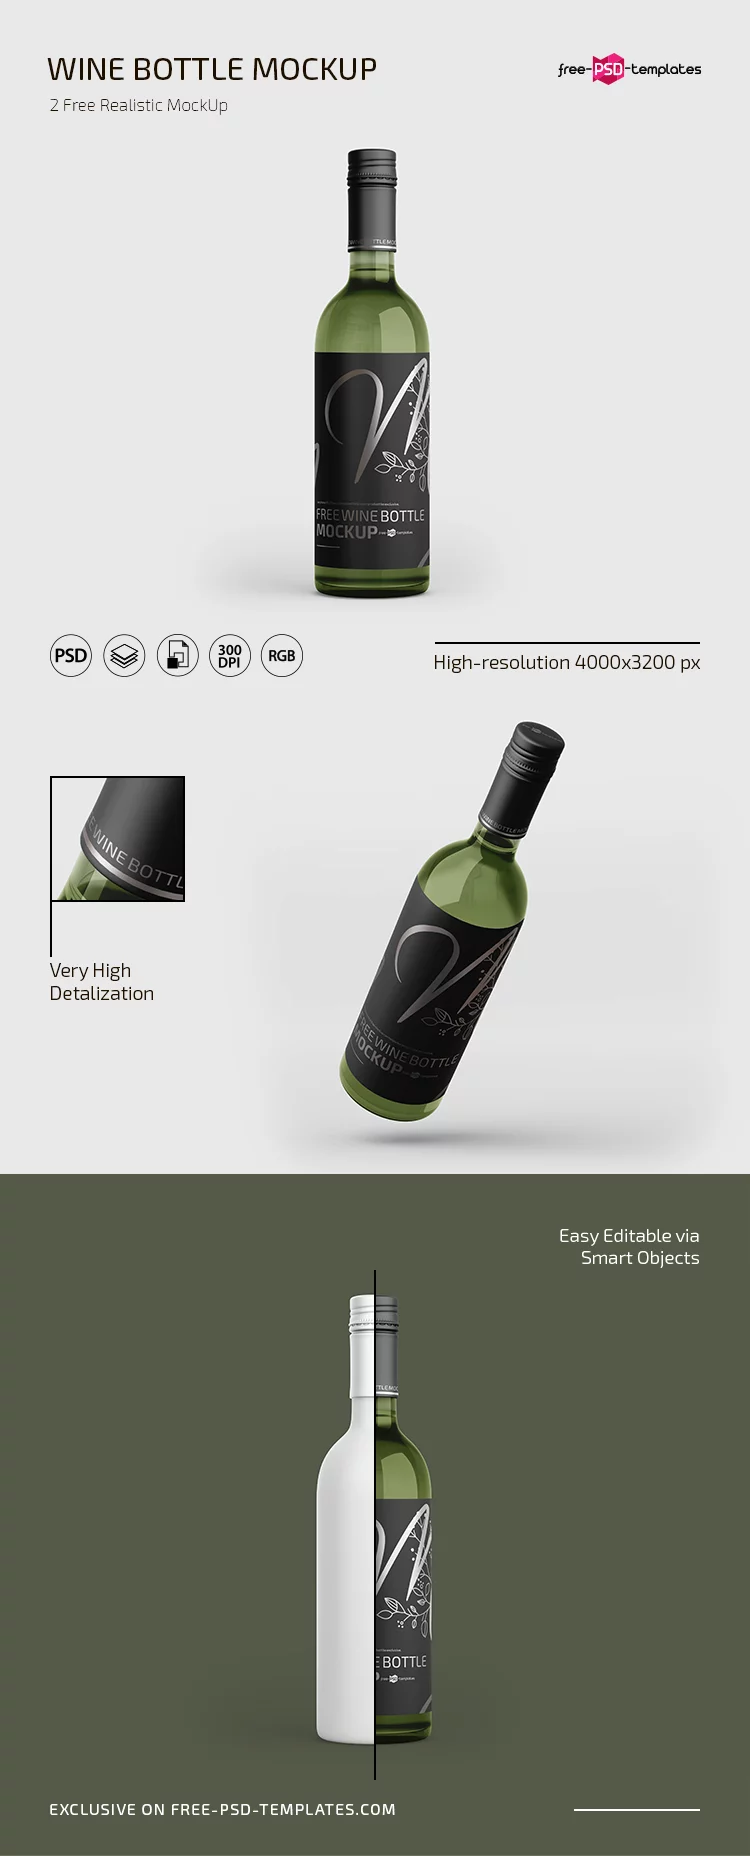 Free Wine Bottle Mockup in PSD